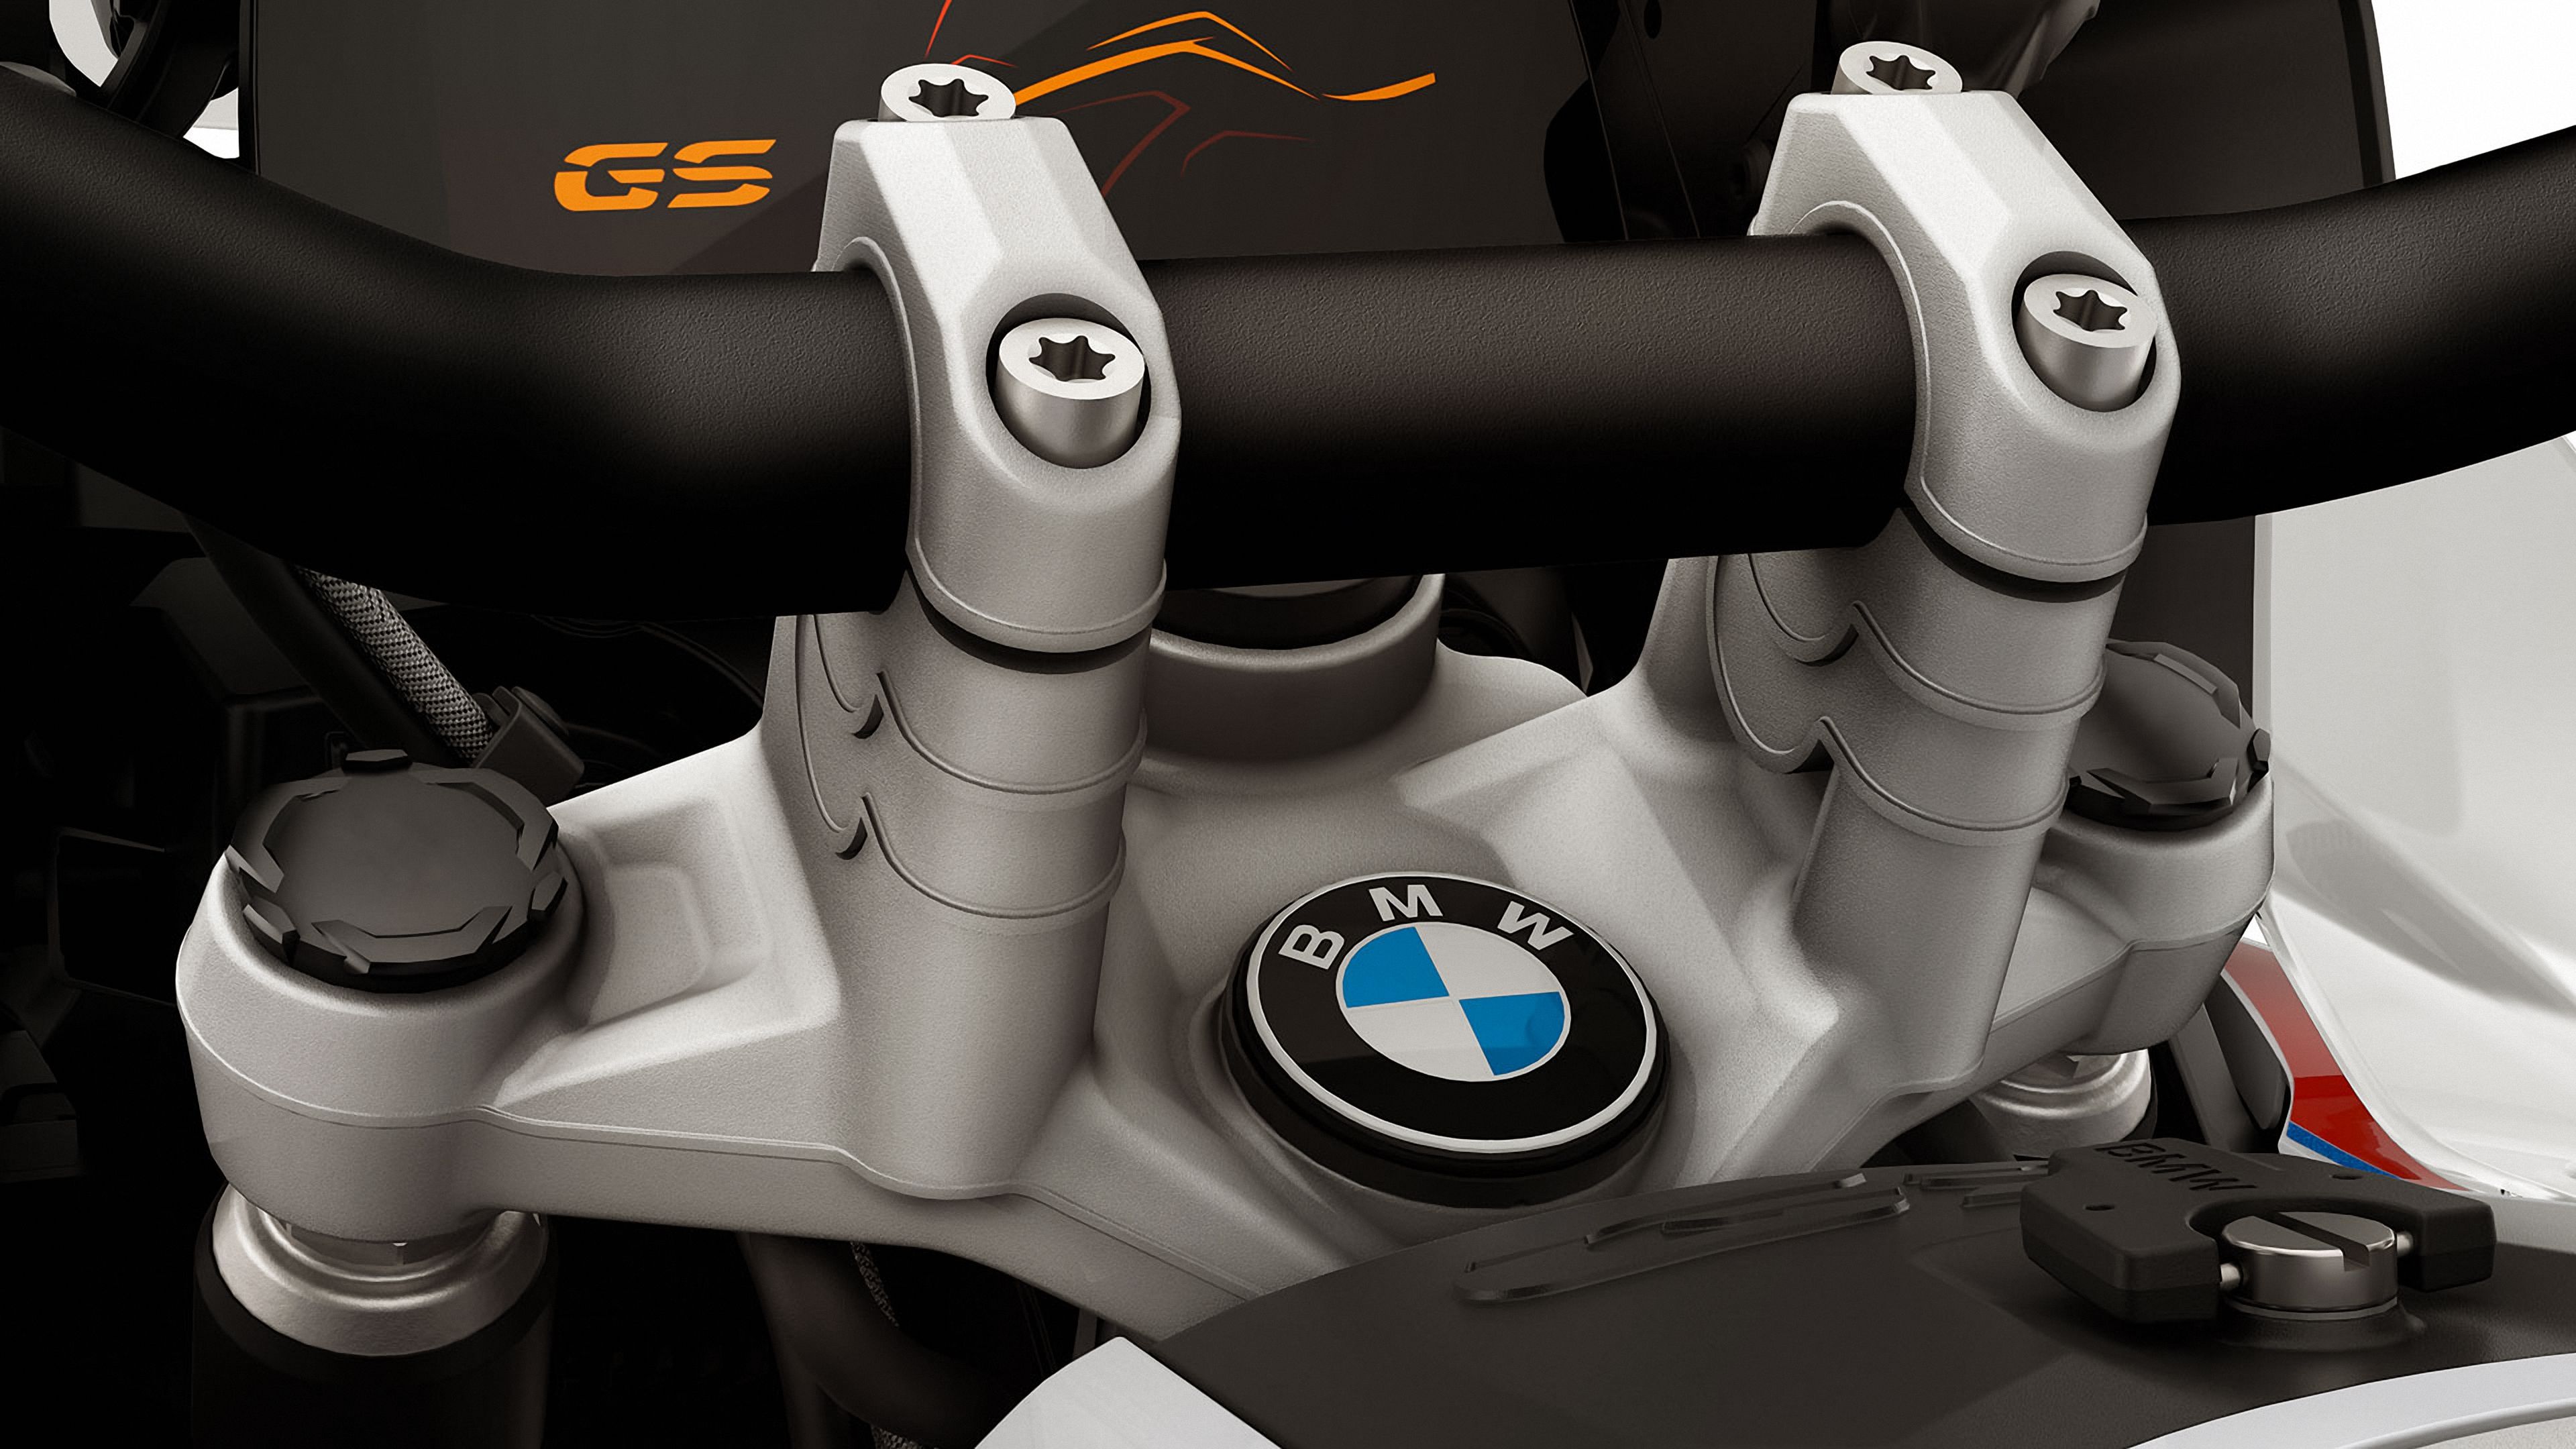 2021 - 2022 BMW R 1250 GS Adventure